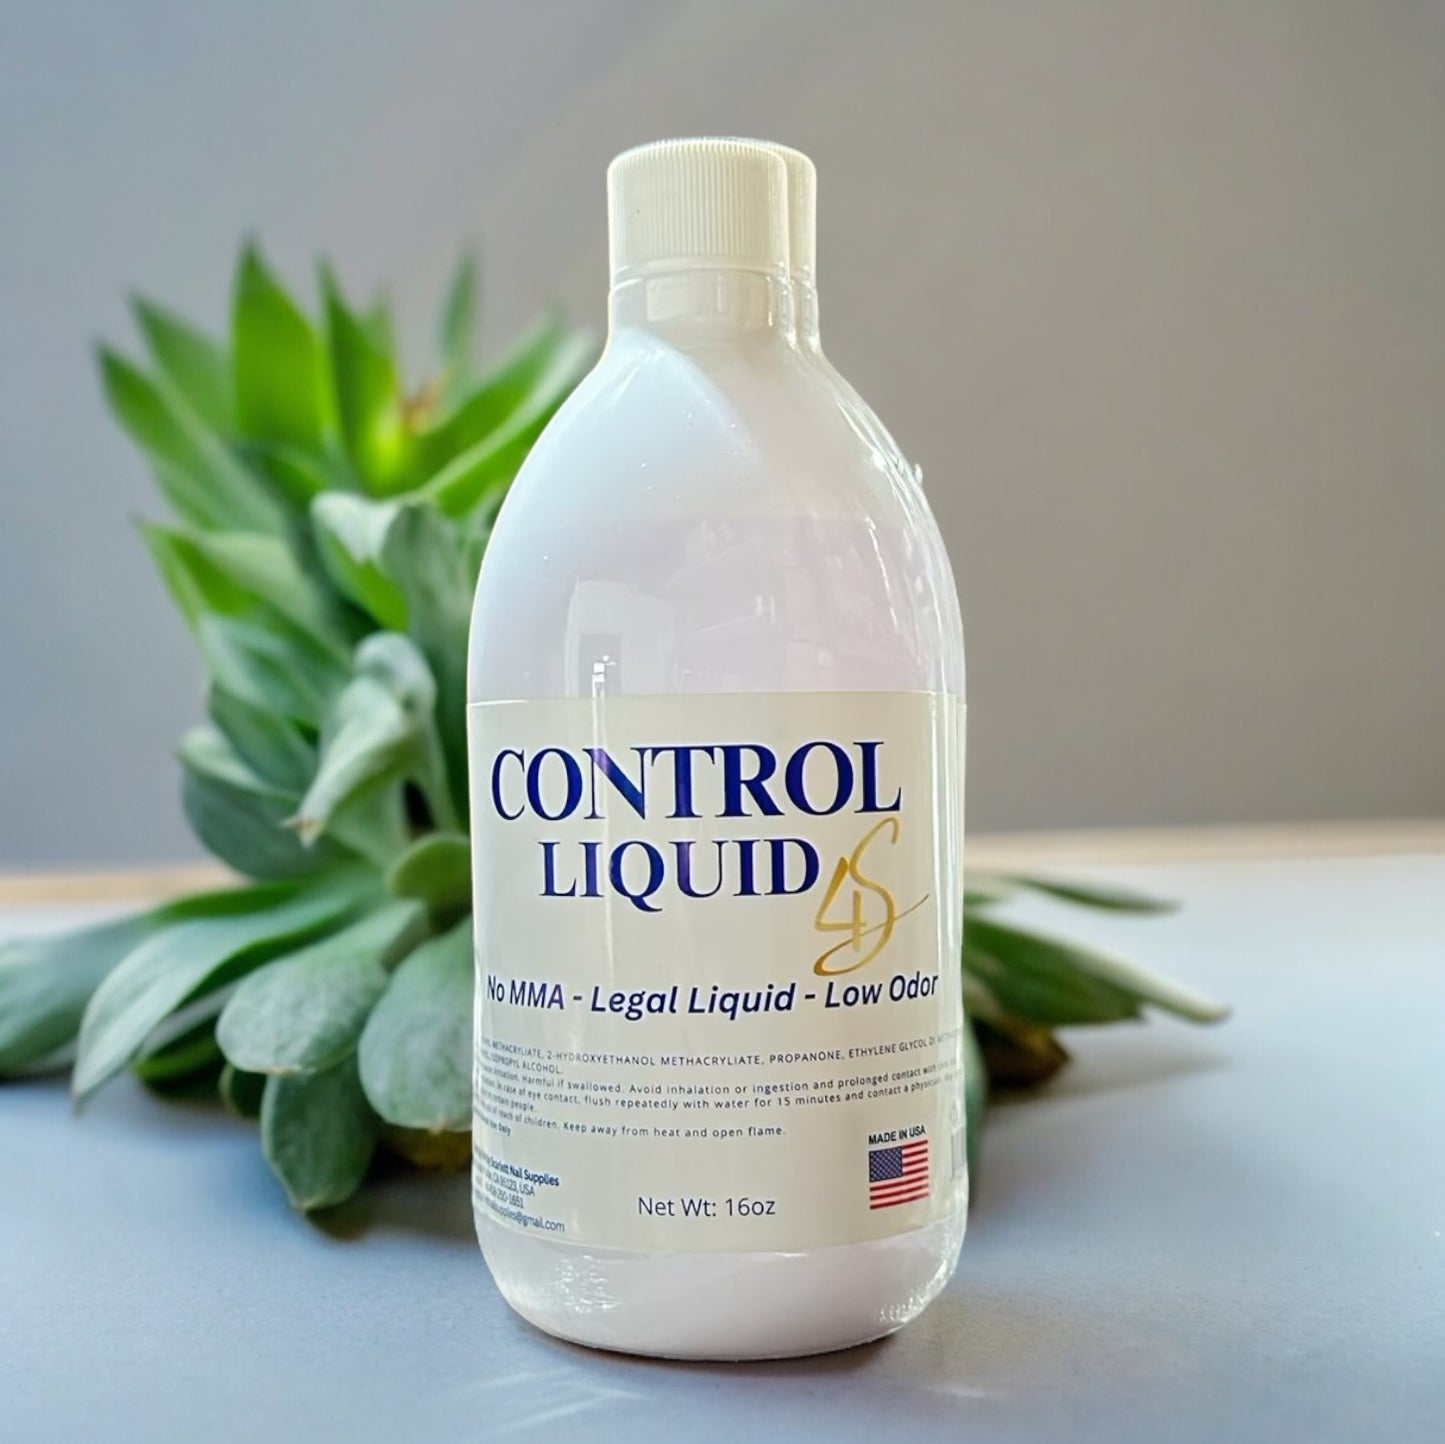 Liquid Control No MMA